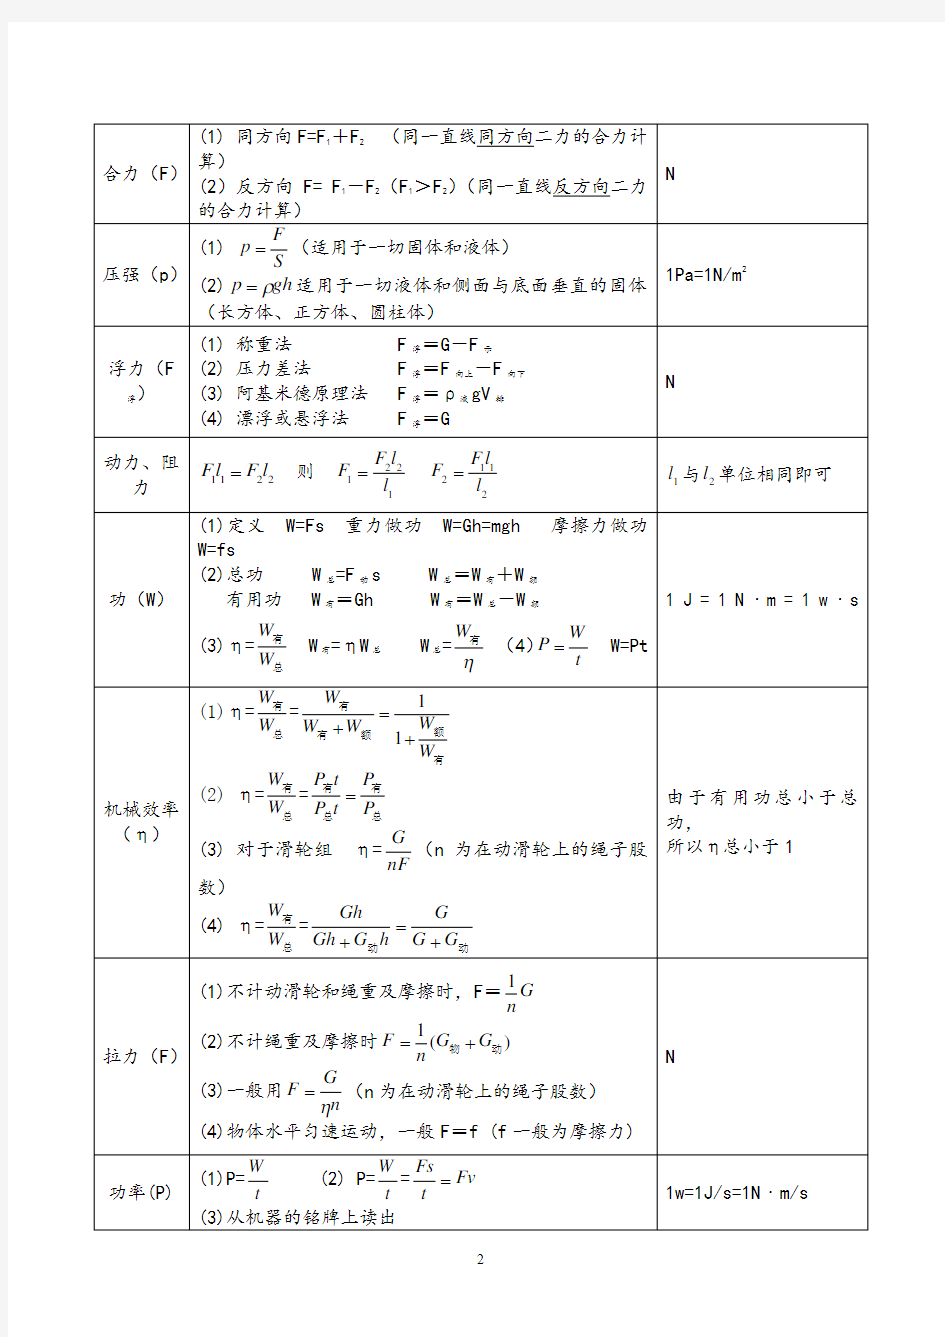 初中物理公式大全(附：初中物理知识点总结归纳).pdf